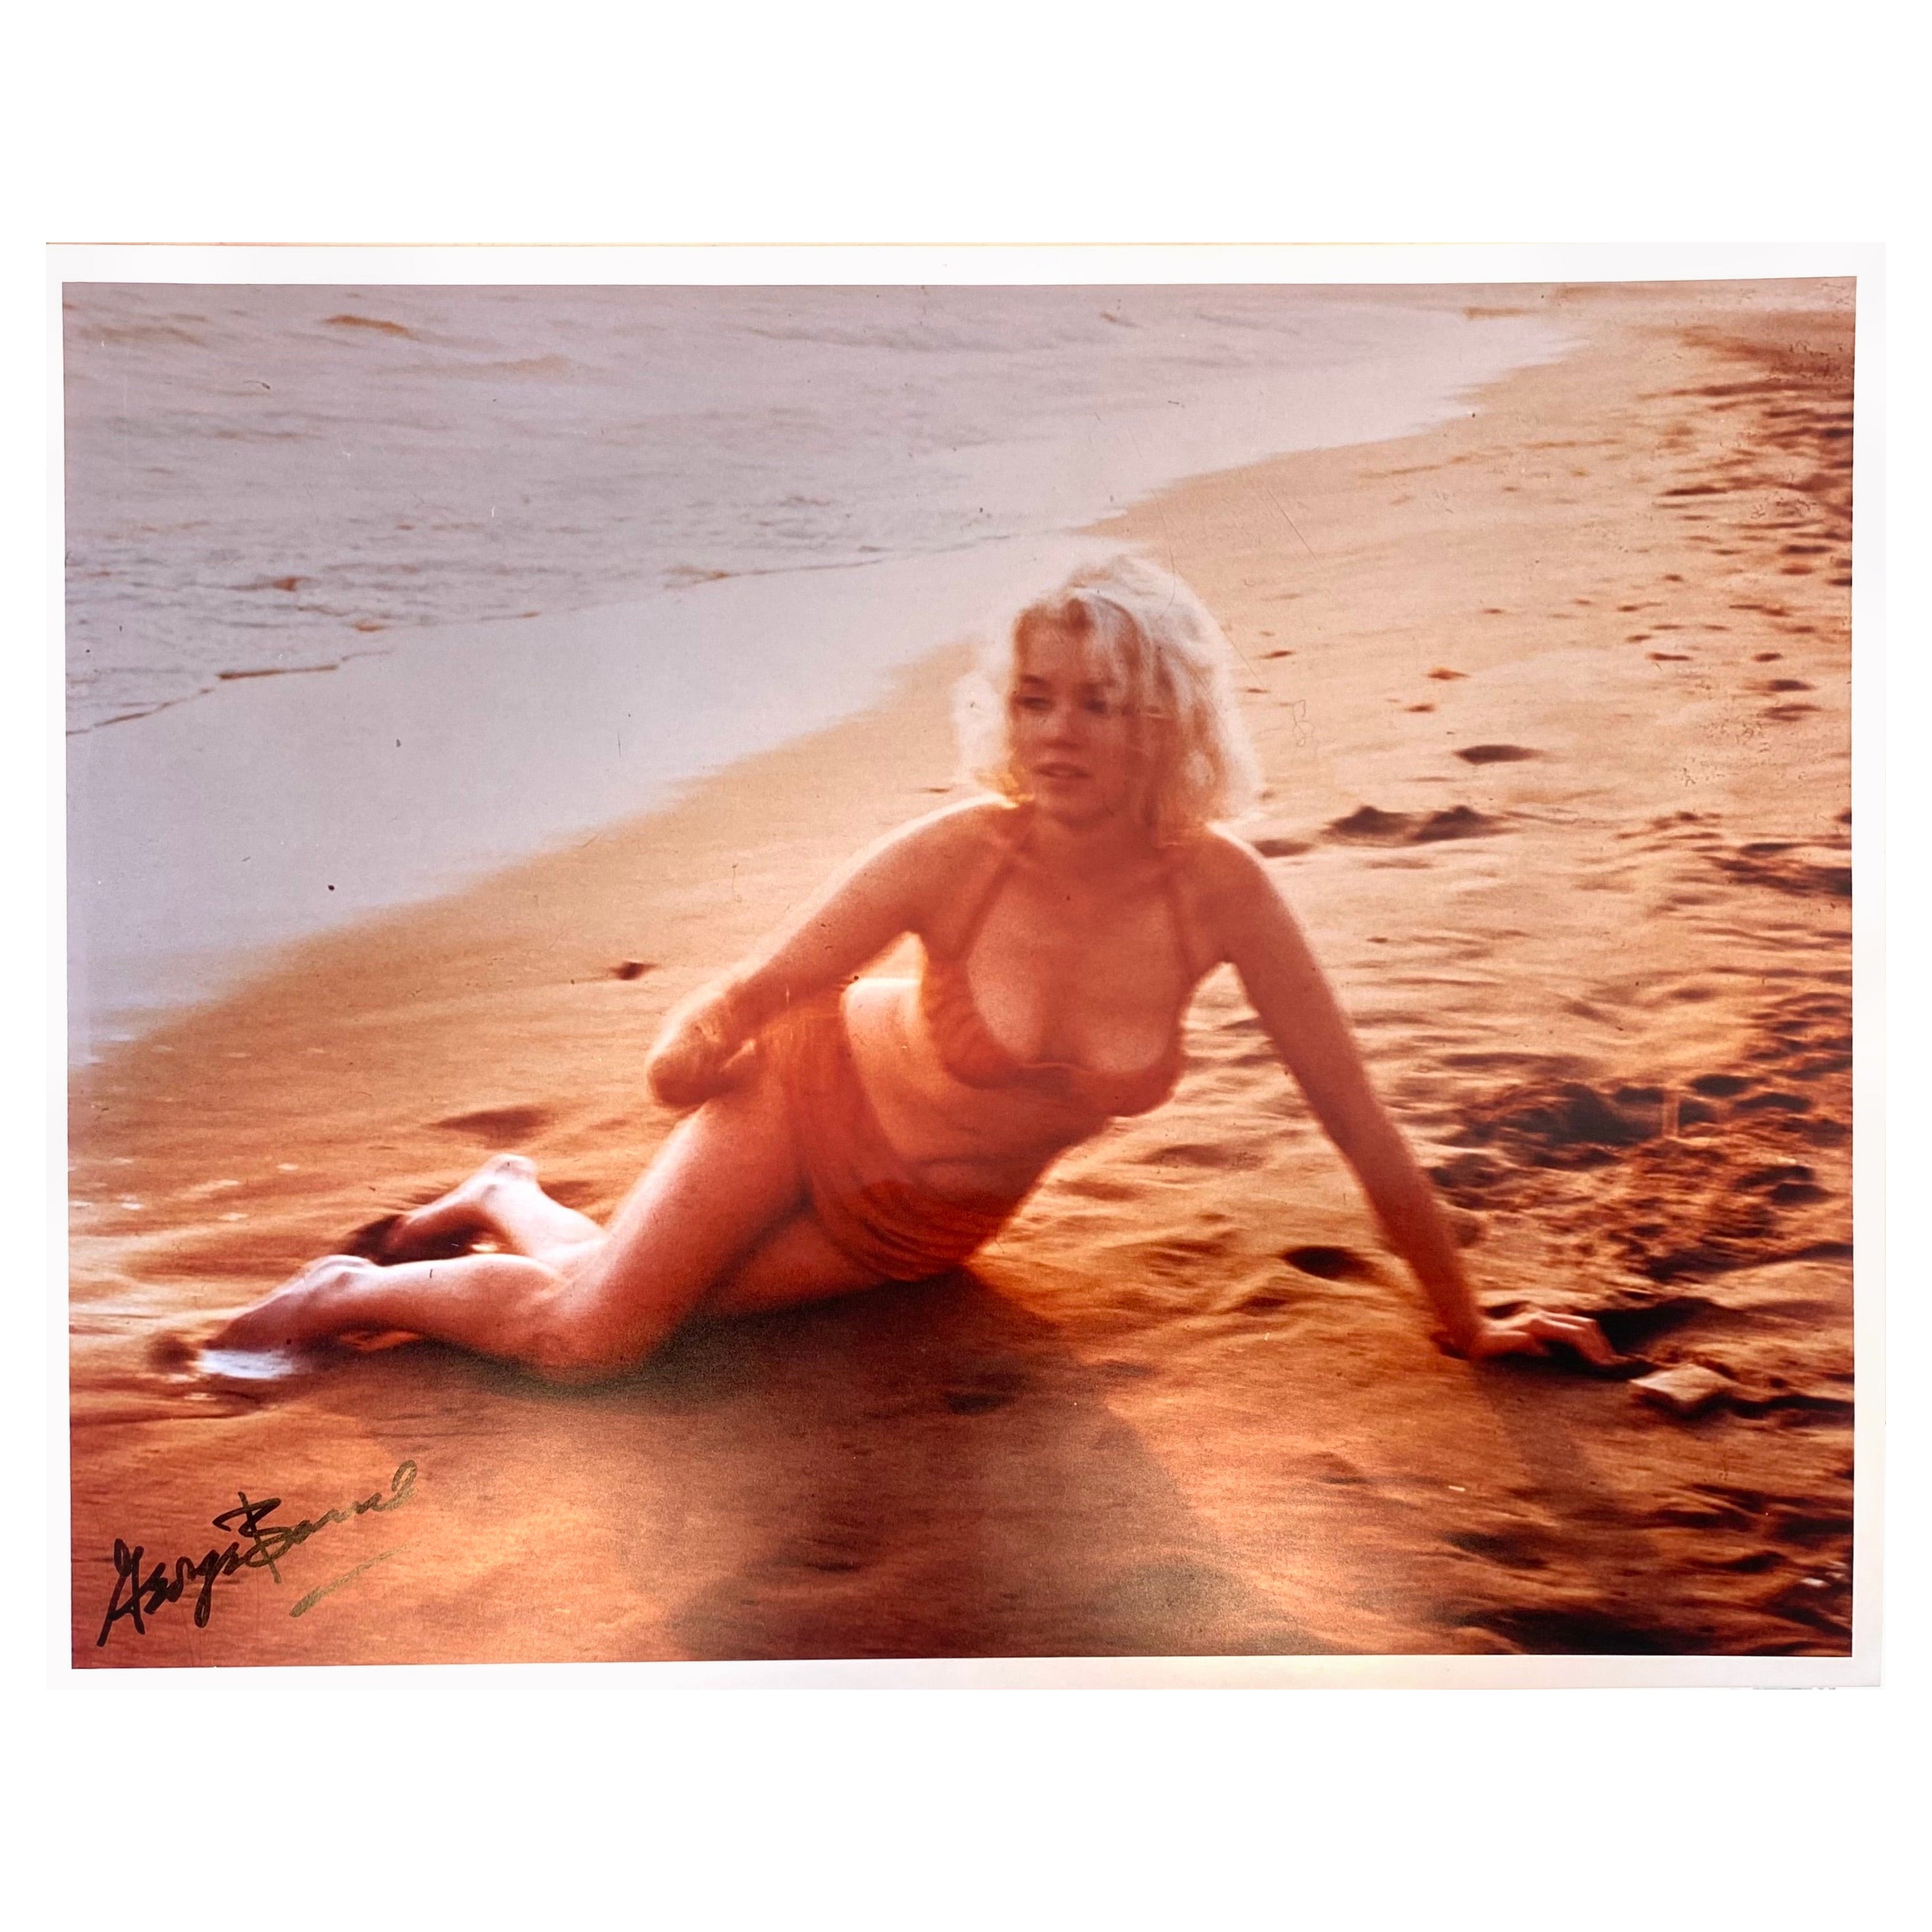 Photograph Santa Monica Beach Marilyn Monroe by G. Barris